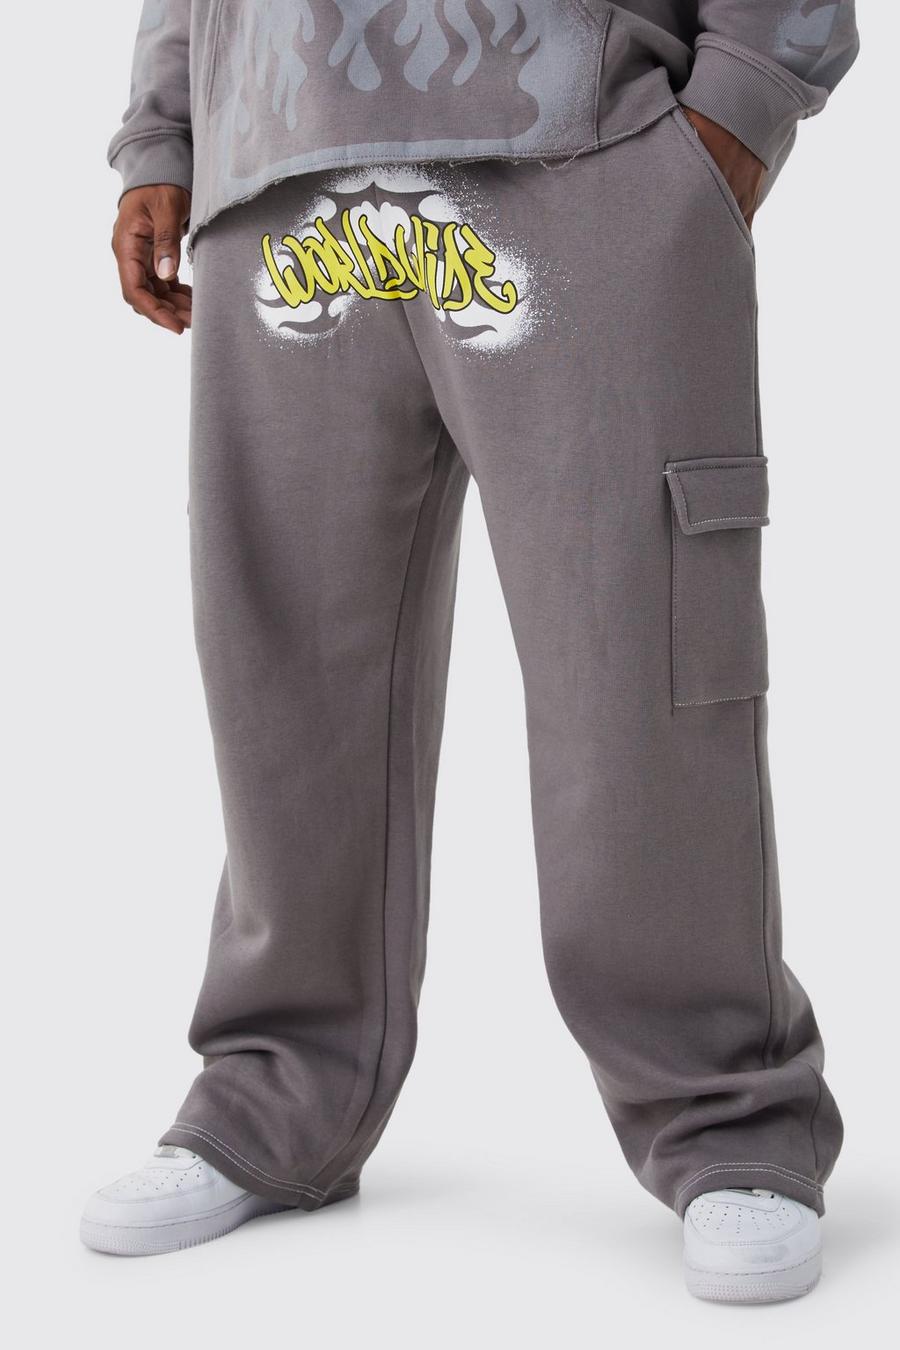 Pantalón deportivo Plus cargo holgado con grafiti Worldwide, Mid grey grigio